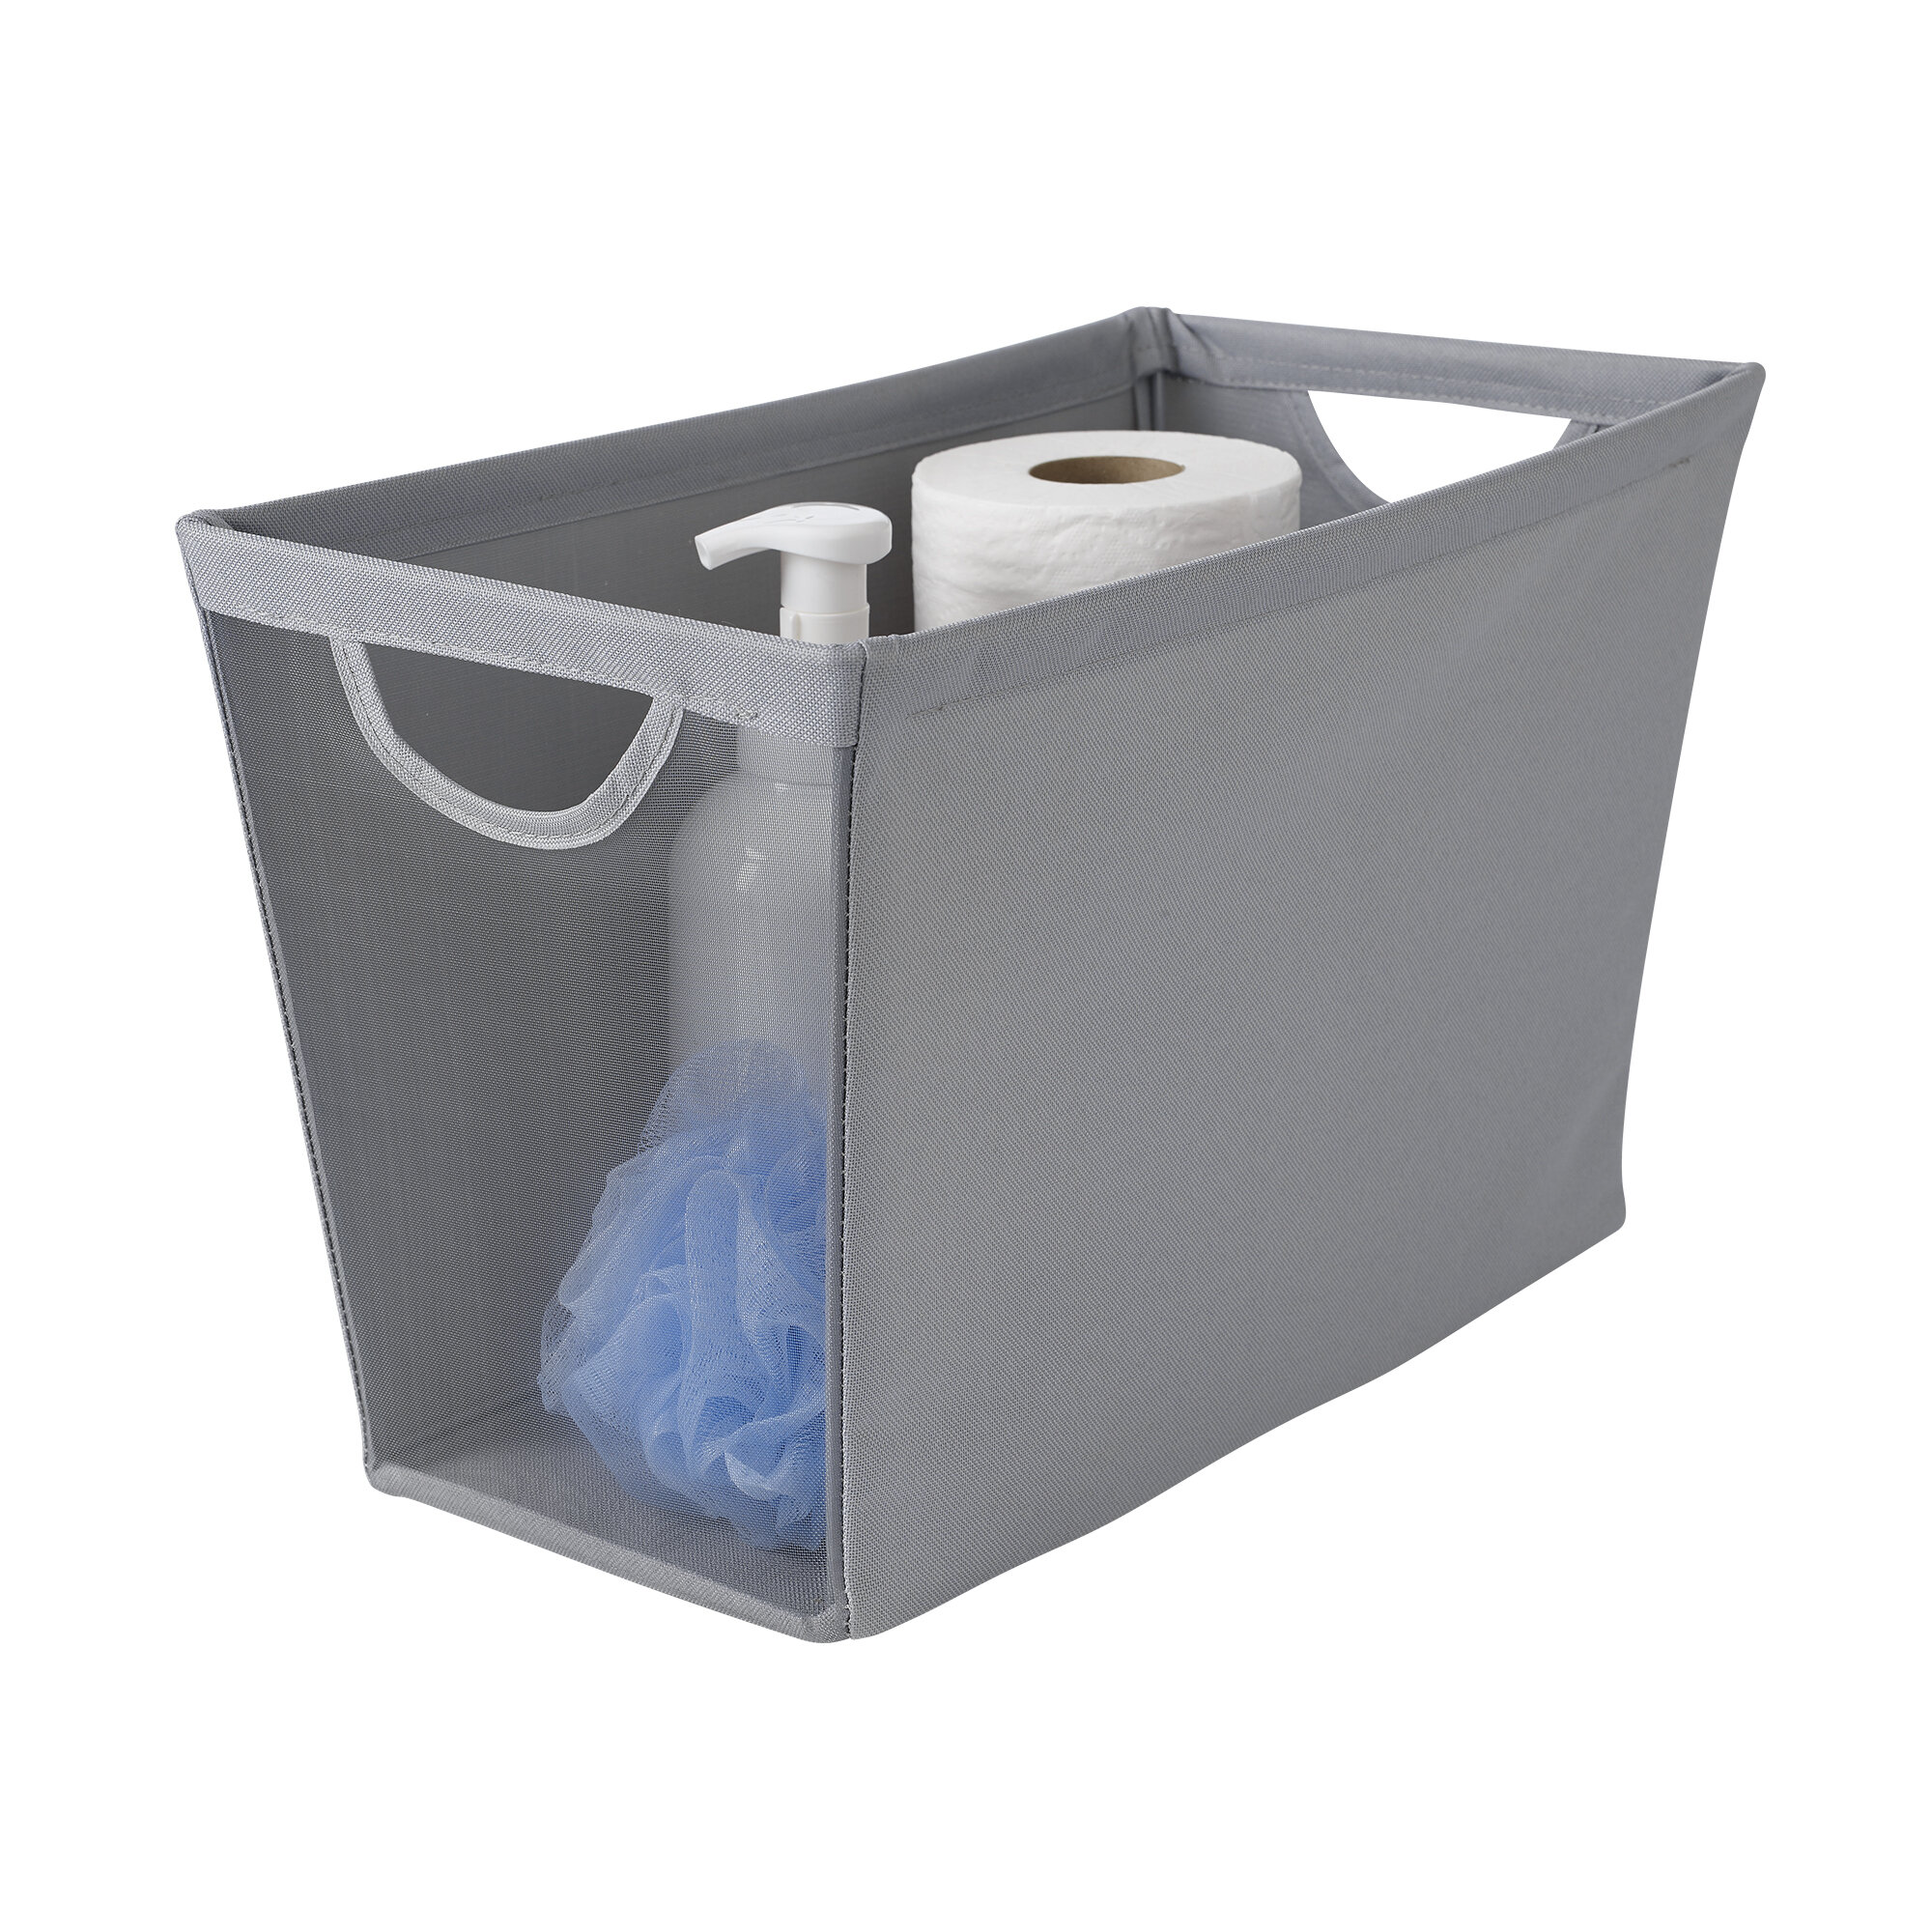 narrow plastic bin